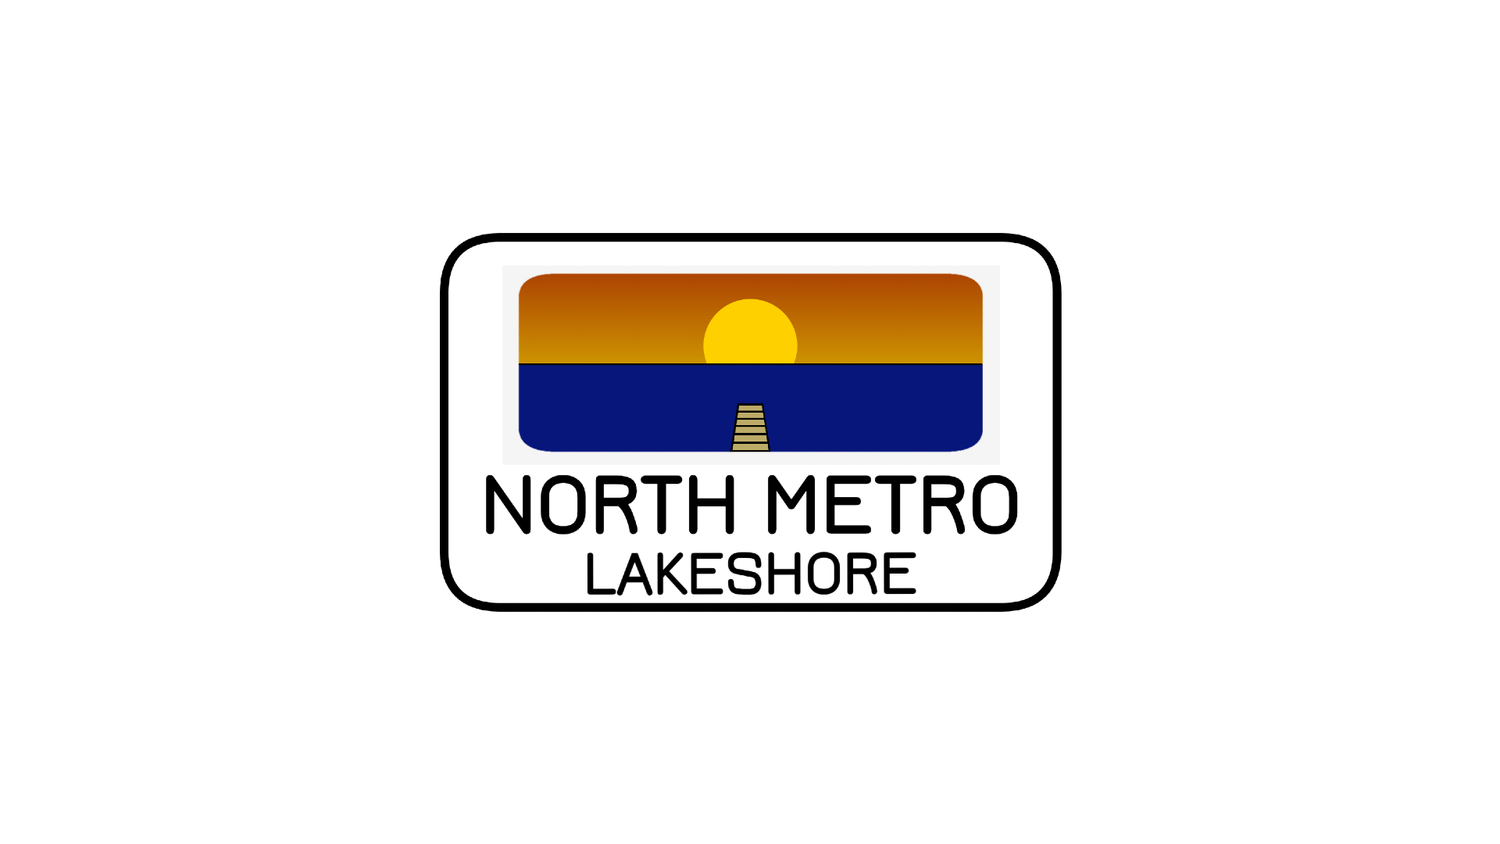 North Metro Lakeshore